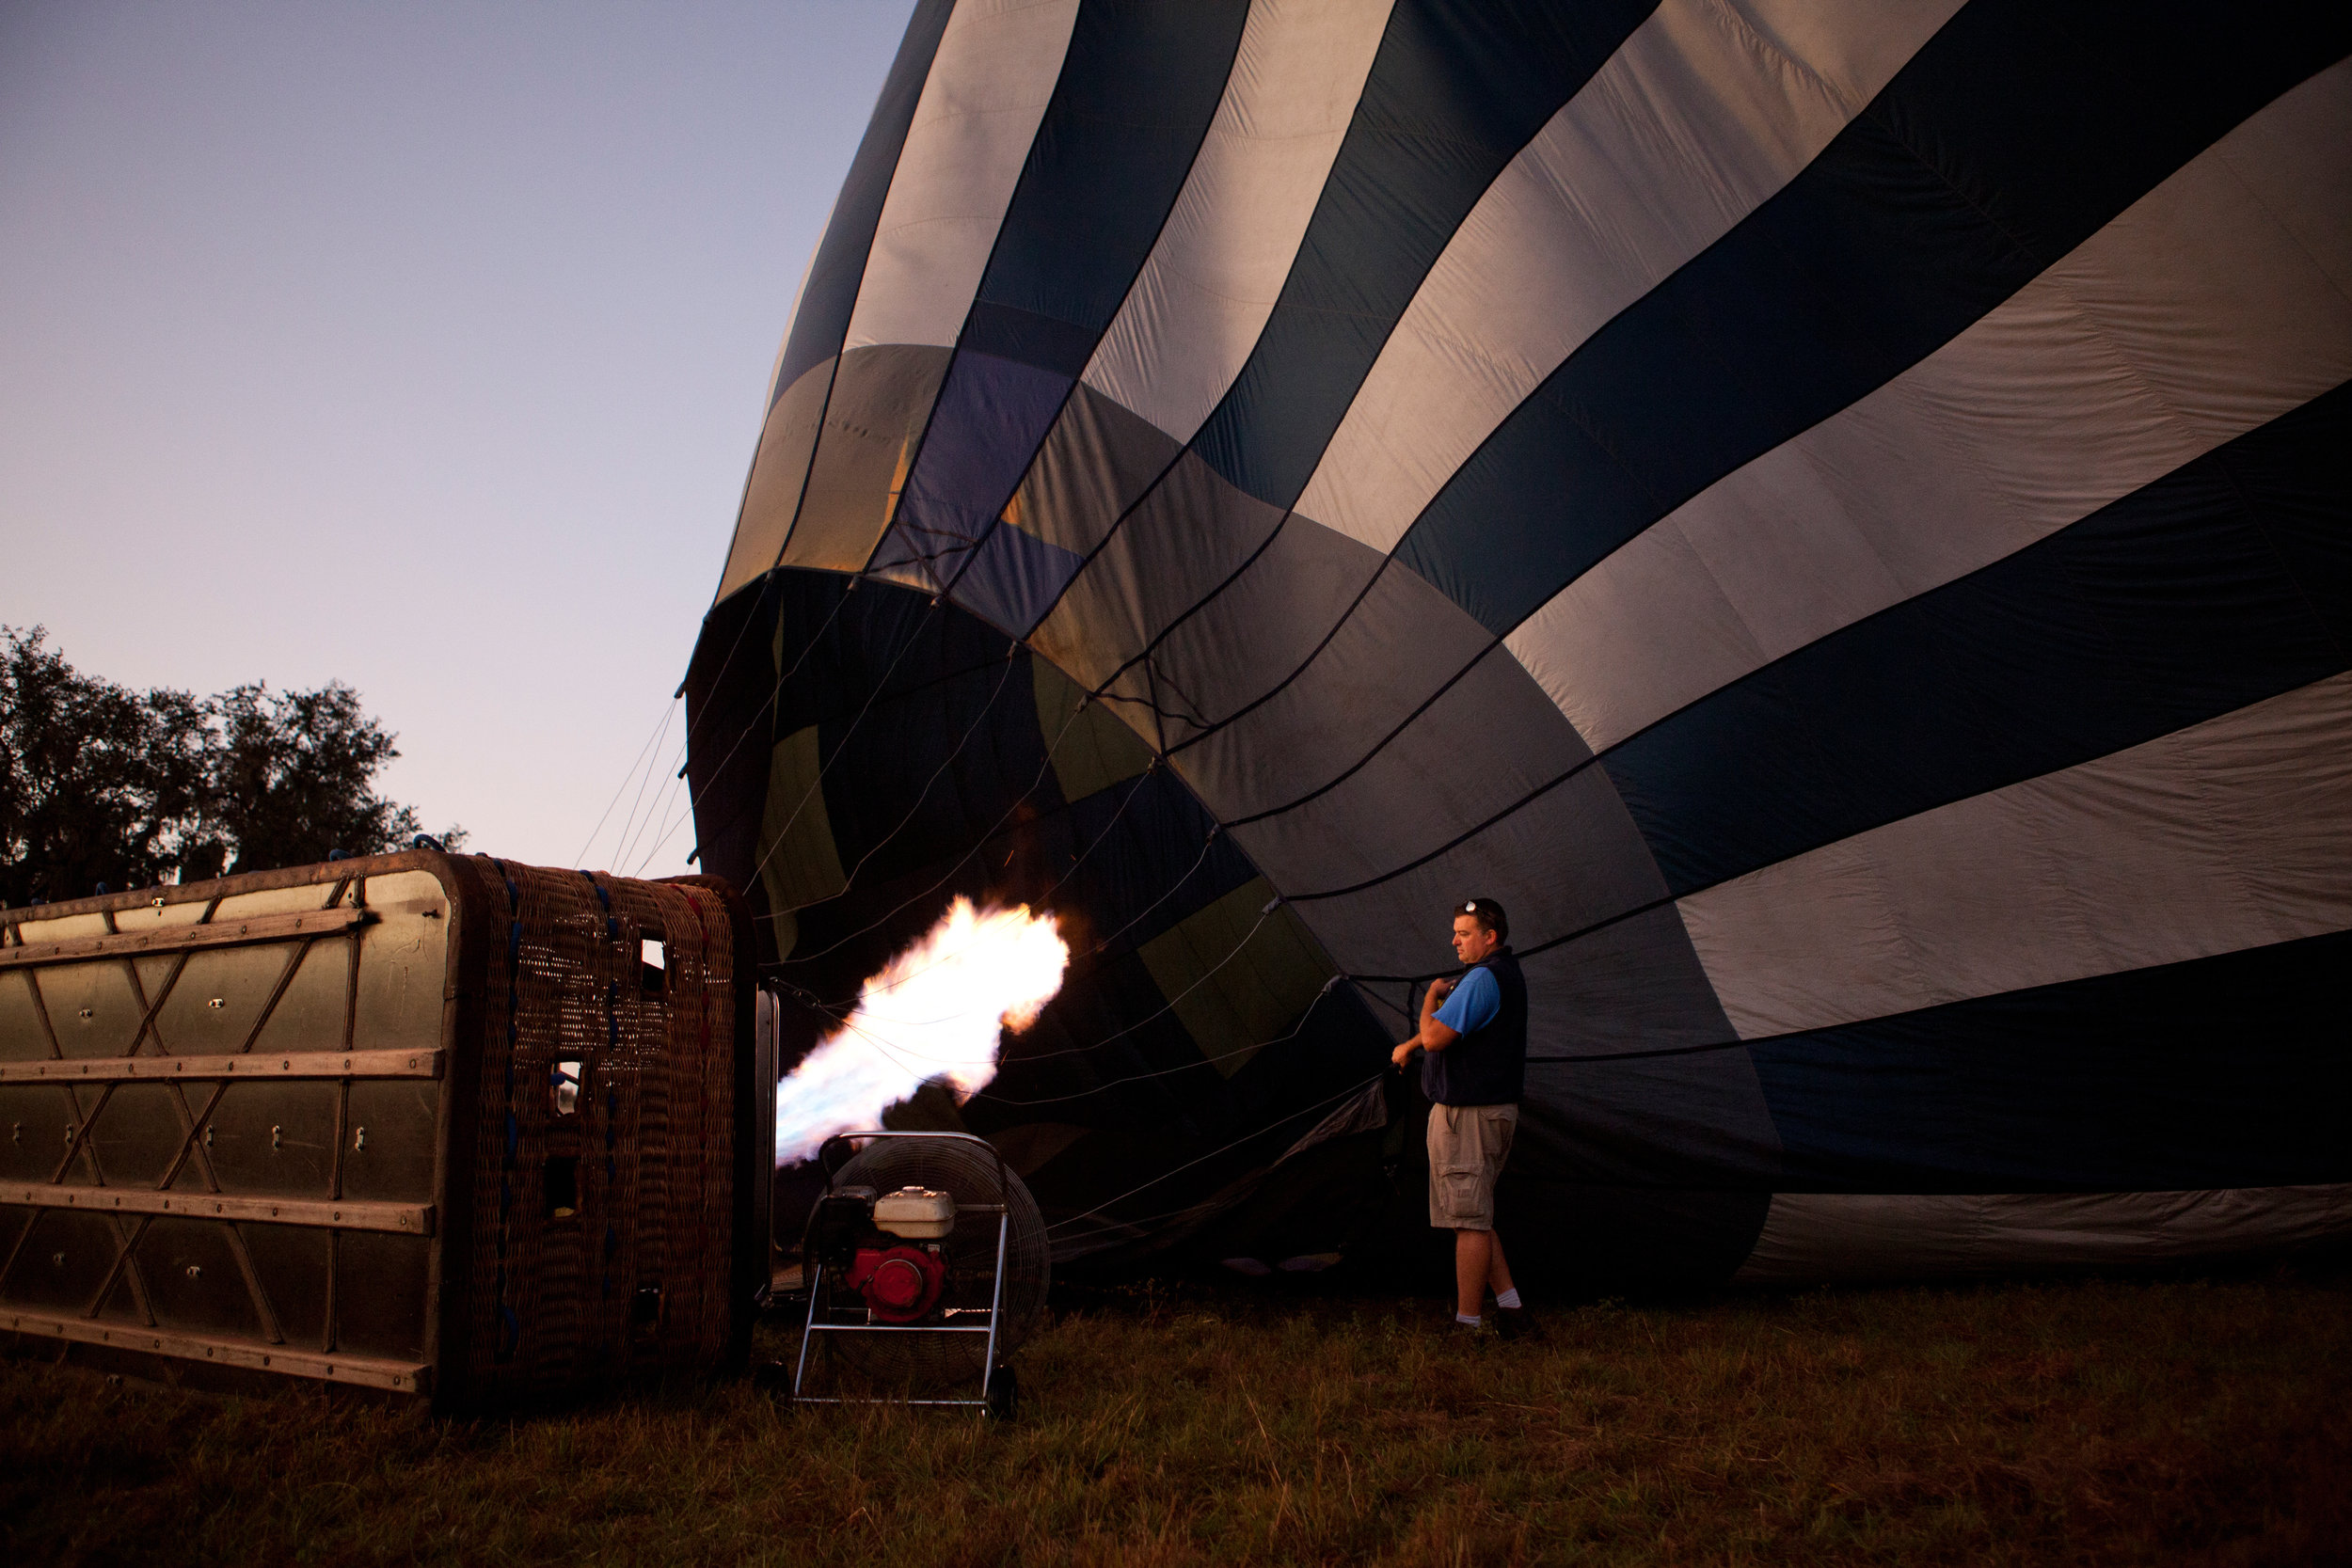 Hot Air Balloon ride, Orlando, Florida, USA.jpg